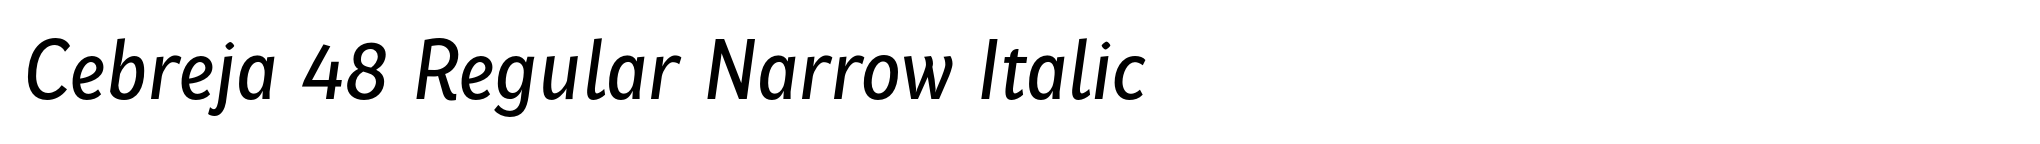 Cebreja 48 Regular Narrow Italic image